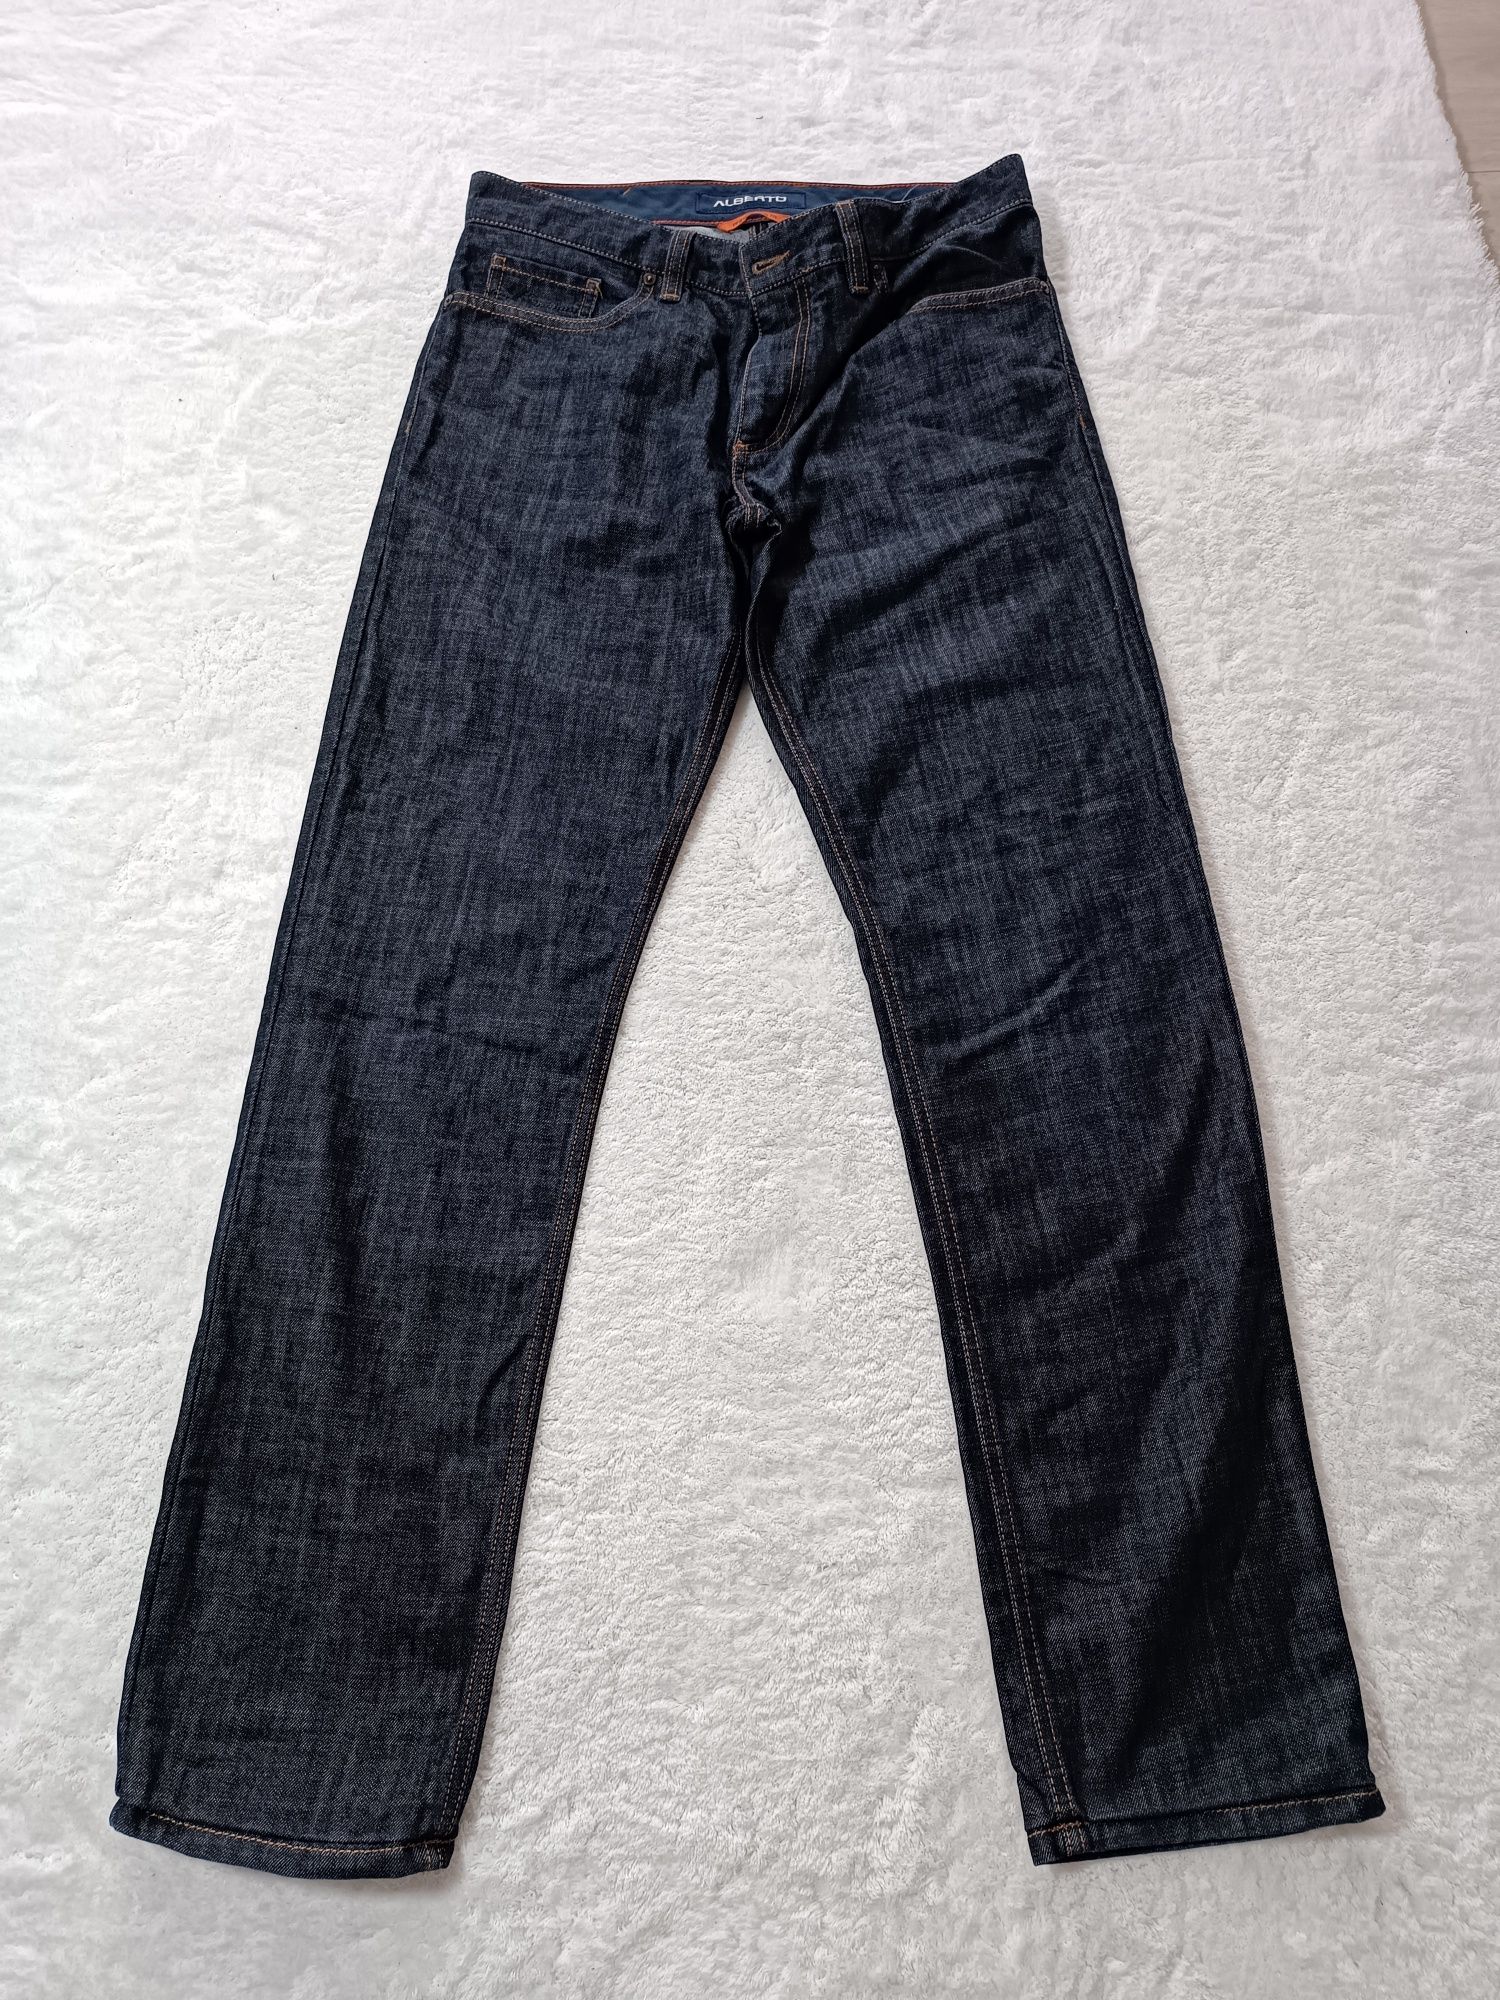 Spodnie dżinsowe damskie rozmiar W32 L34 Alberto